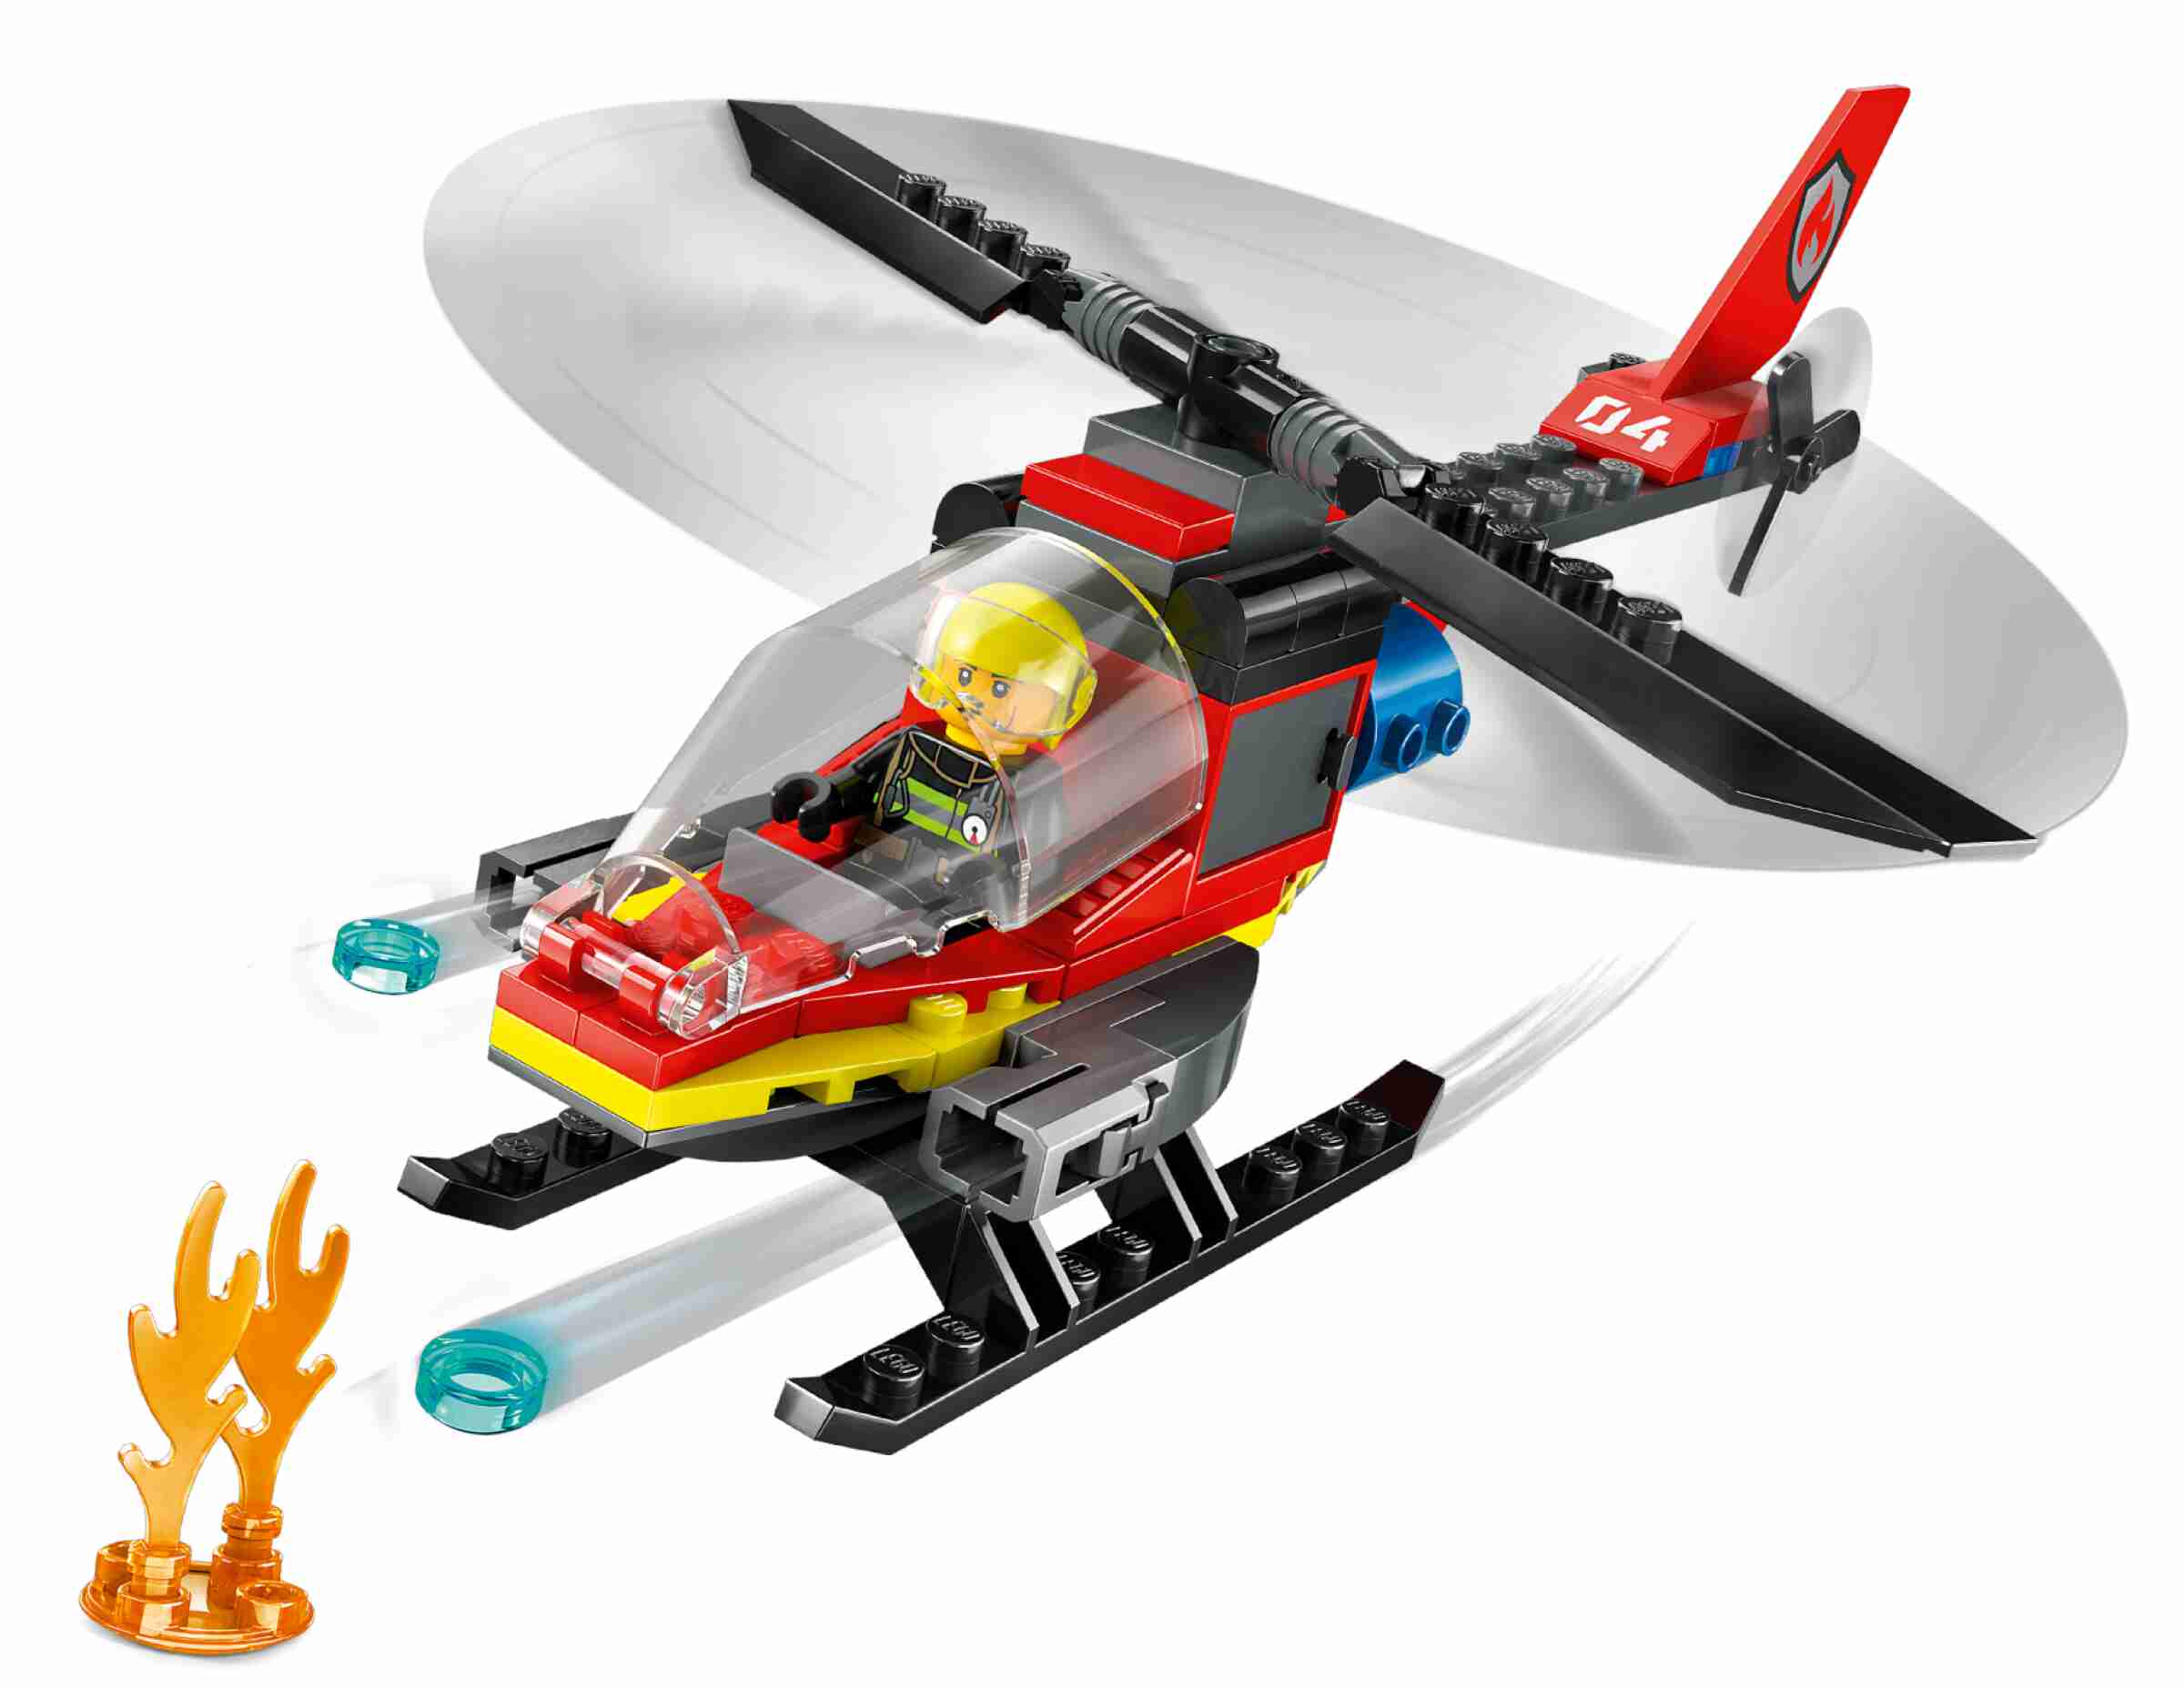 LEGO 60411 City Feuerwehrhubschrauber, 2 Löschkanonen, 1 Minifigur